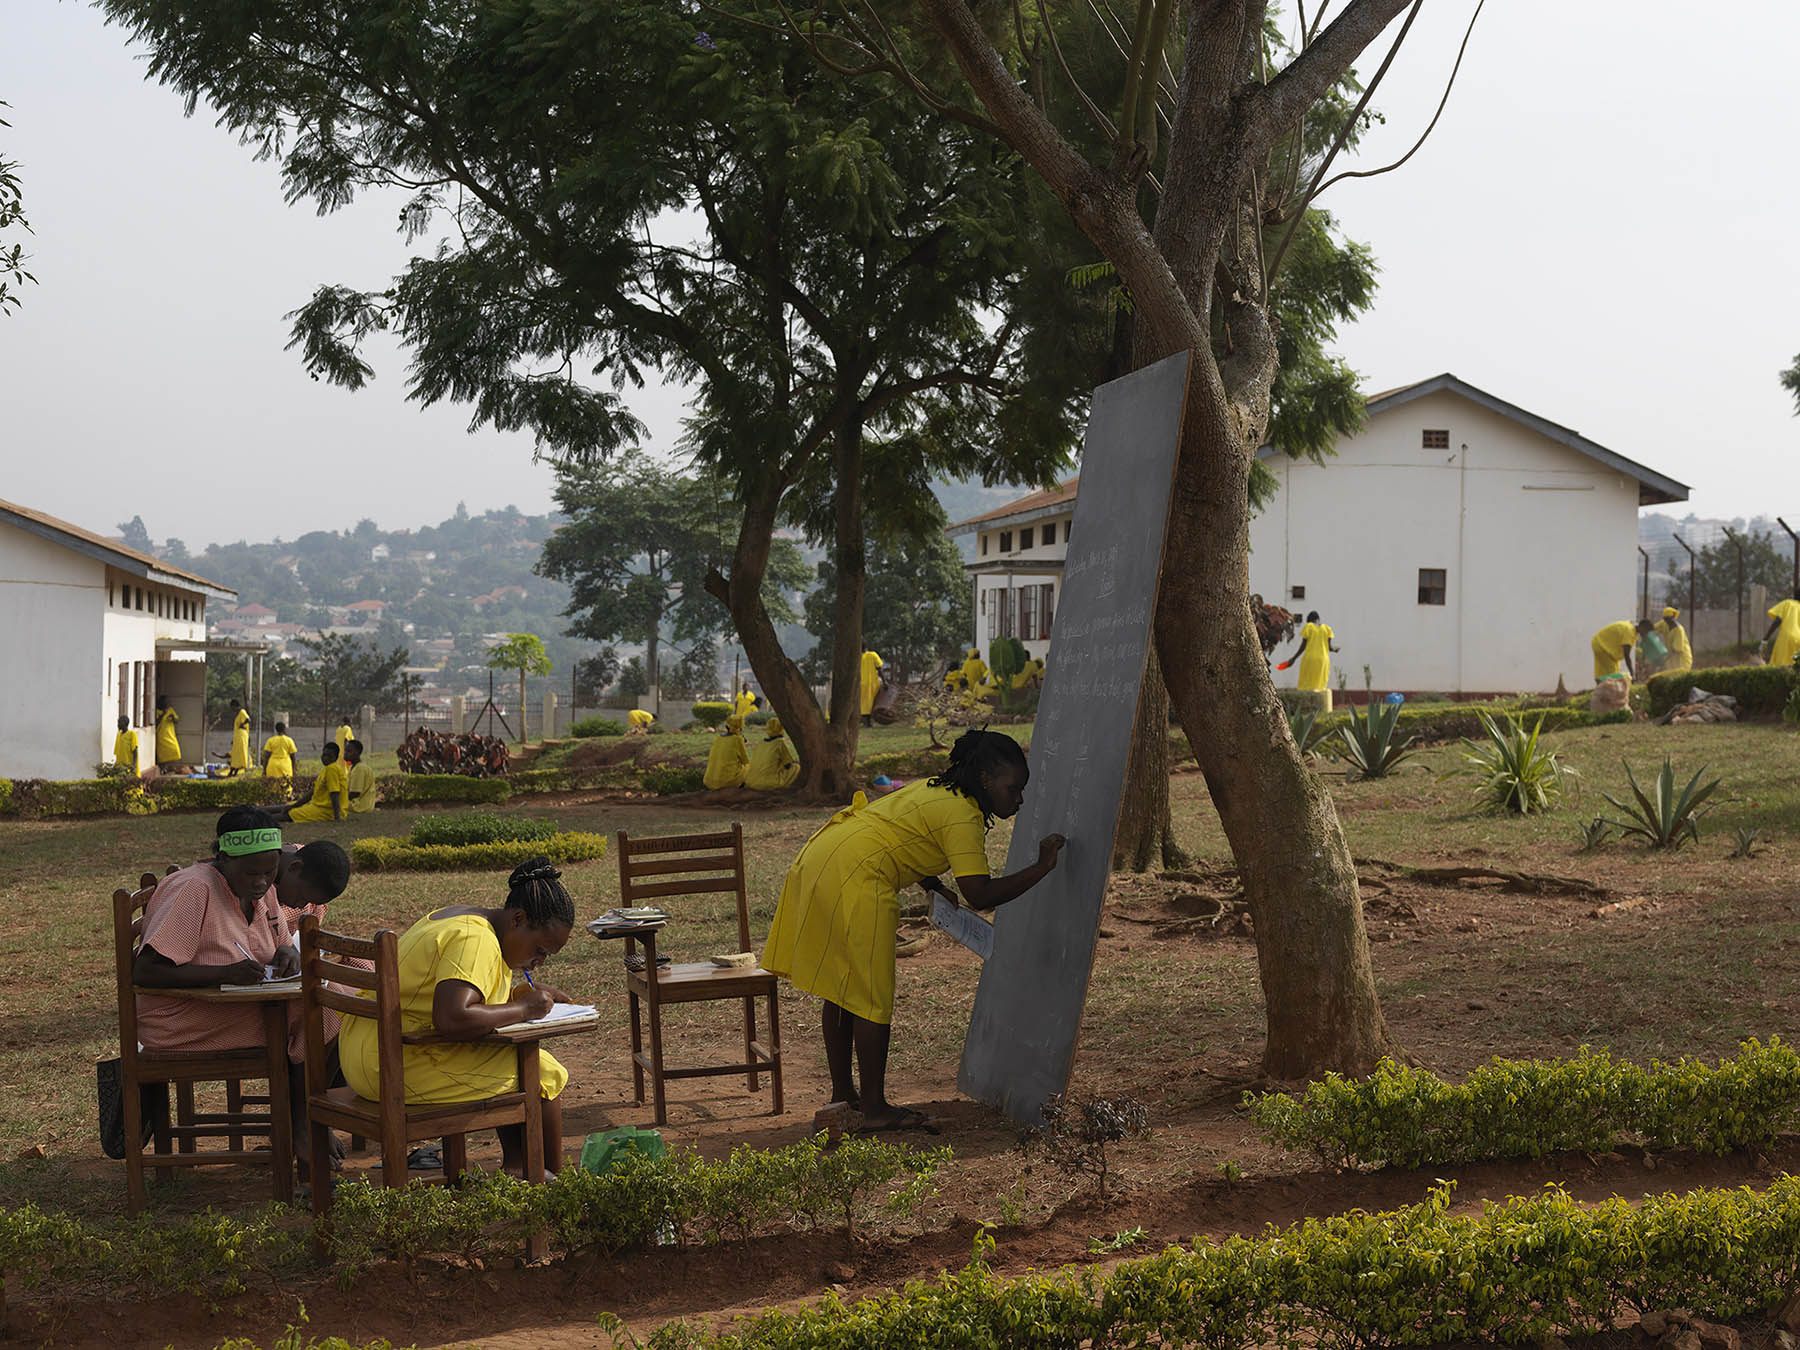 From the series "Law&Order": Uganda, criminal justice. Luzira Women's Prison: school, English lessons.Engelse les in de tuin van de vrouwenafdeling van de Luzira-gevangenis aan de rand van Kampala.